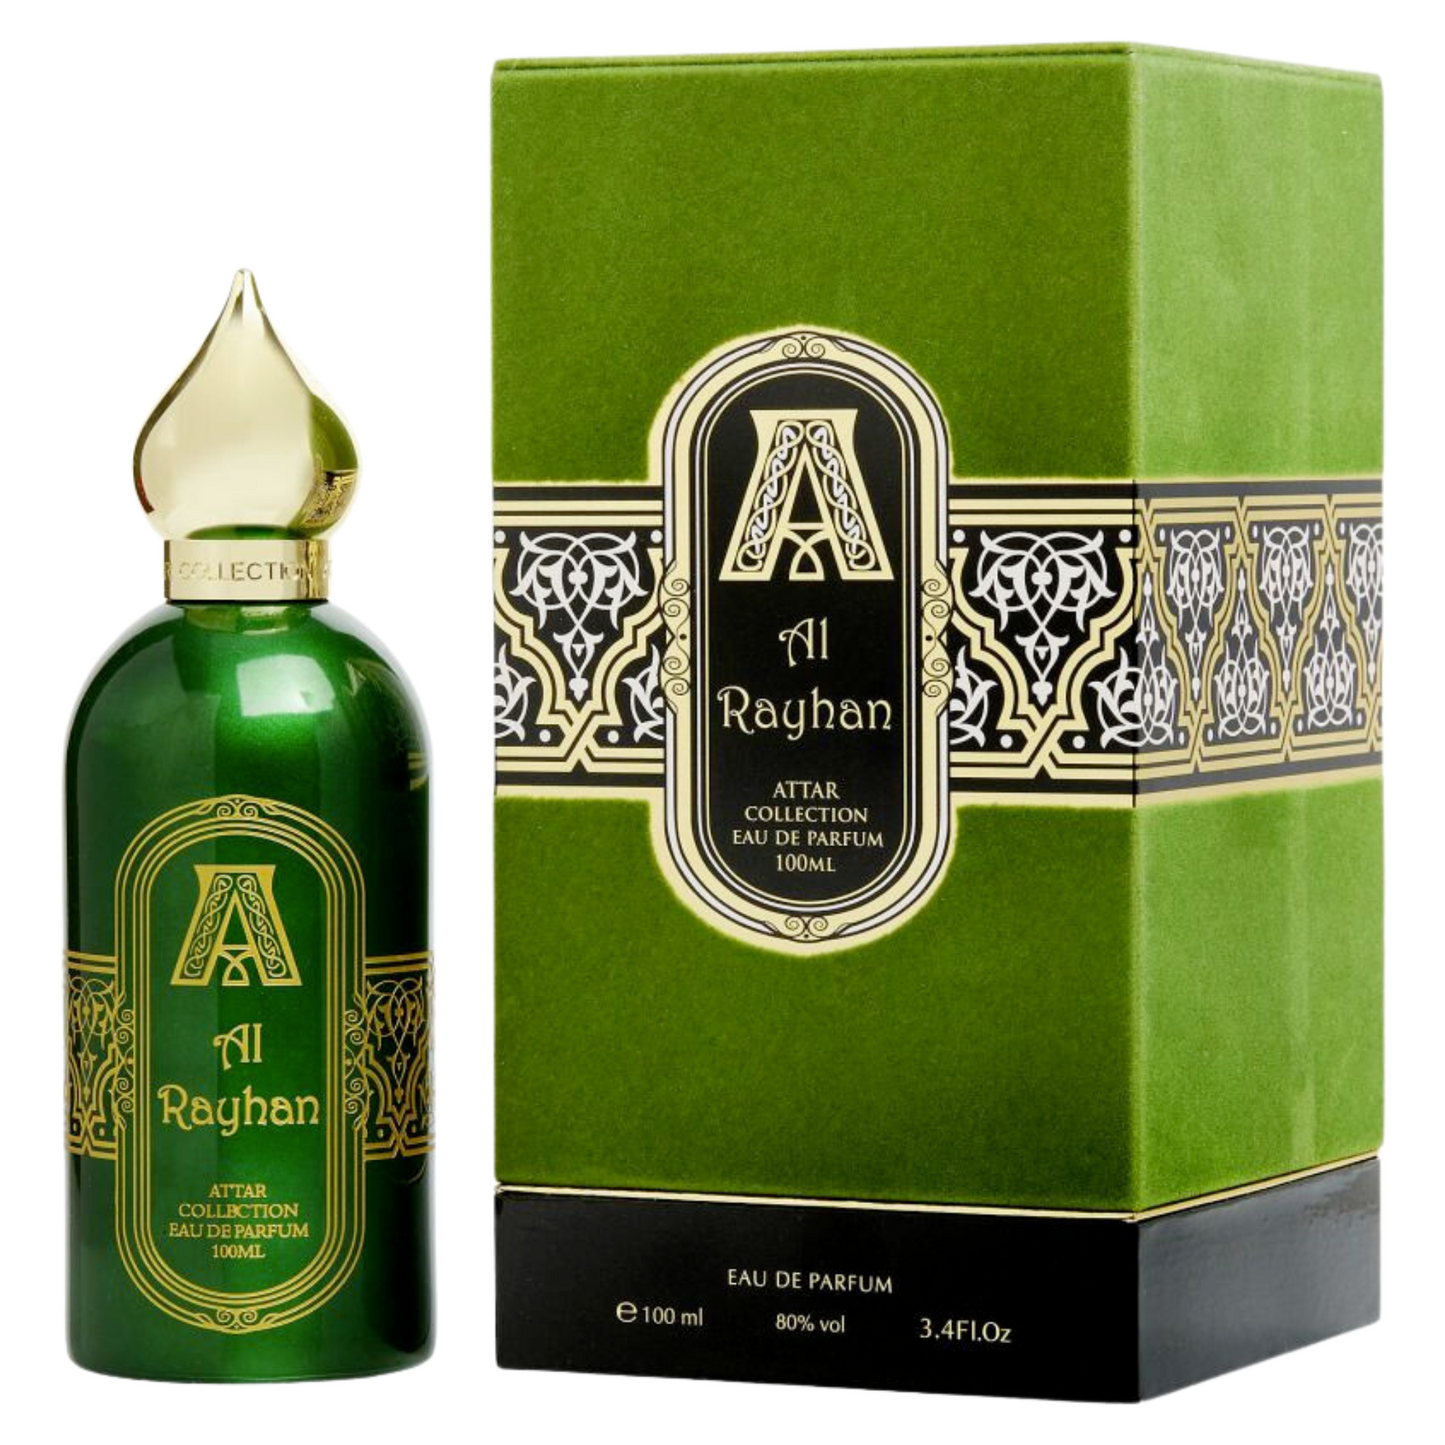 Perfume Unisex ATTAR COLLECTION AL RAYHAN EAU DE PARFUM 100ml